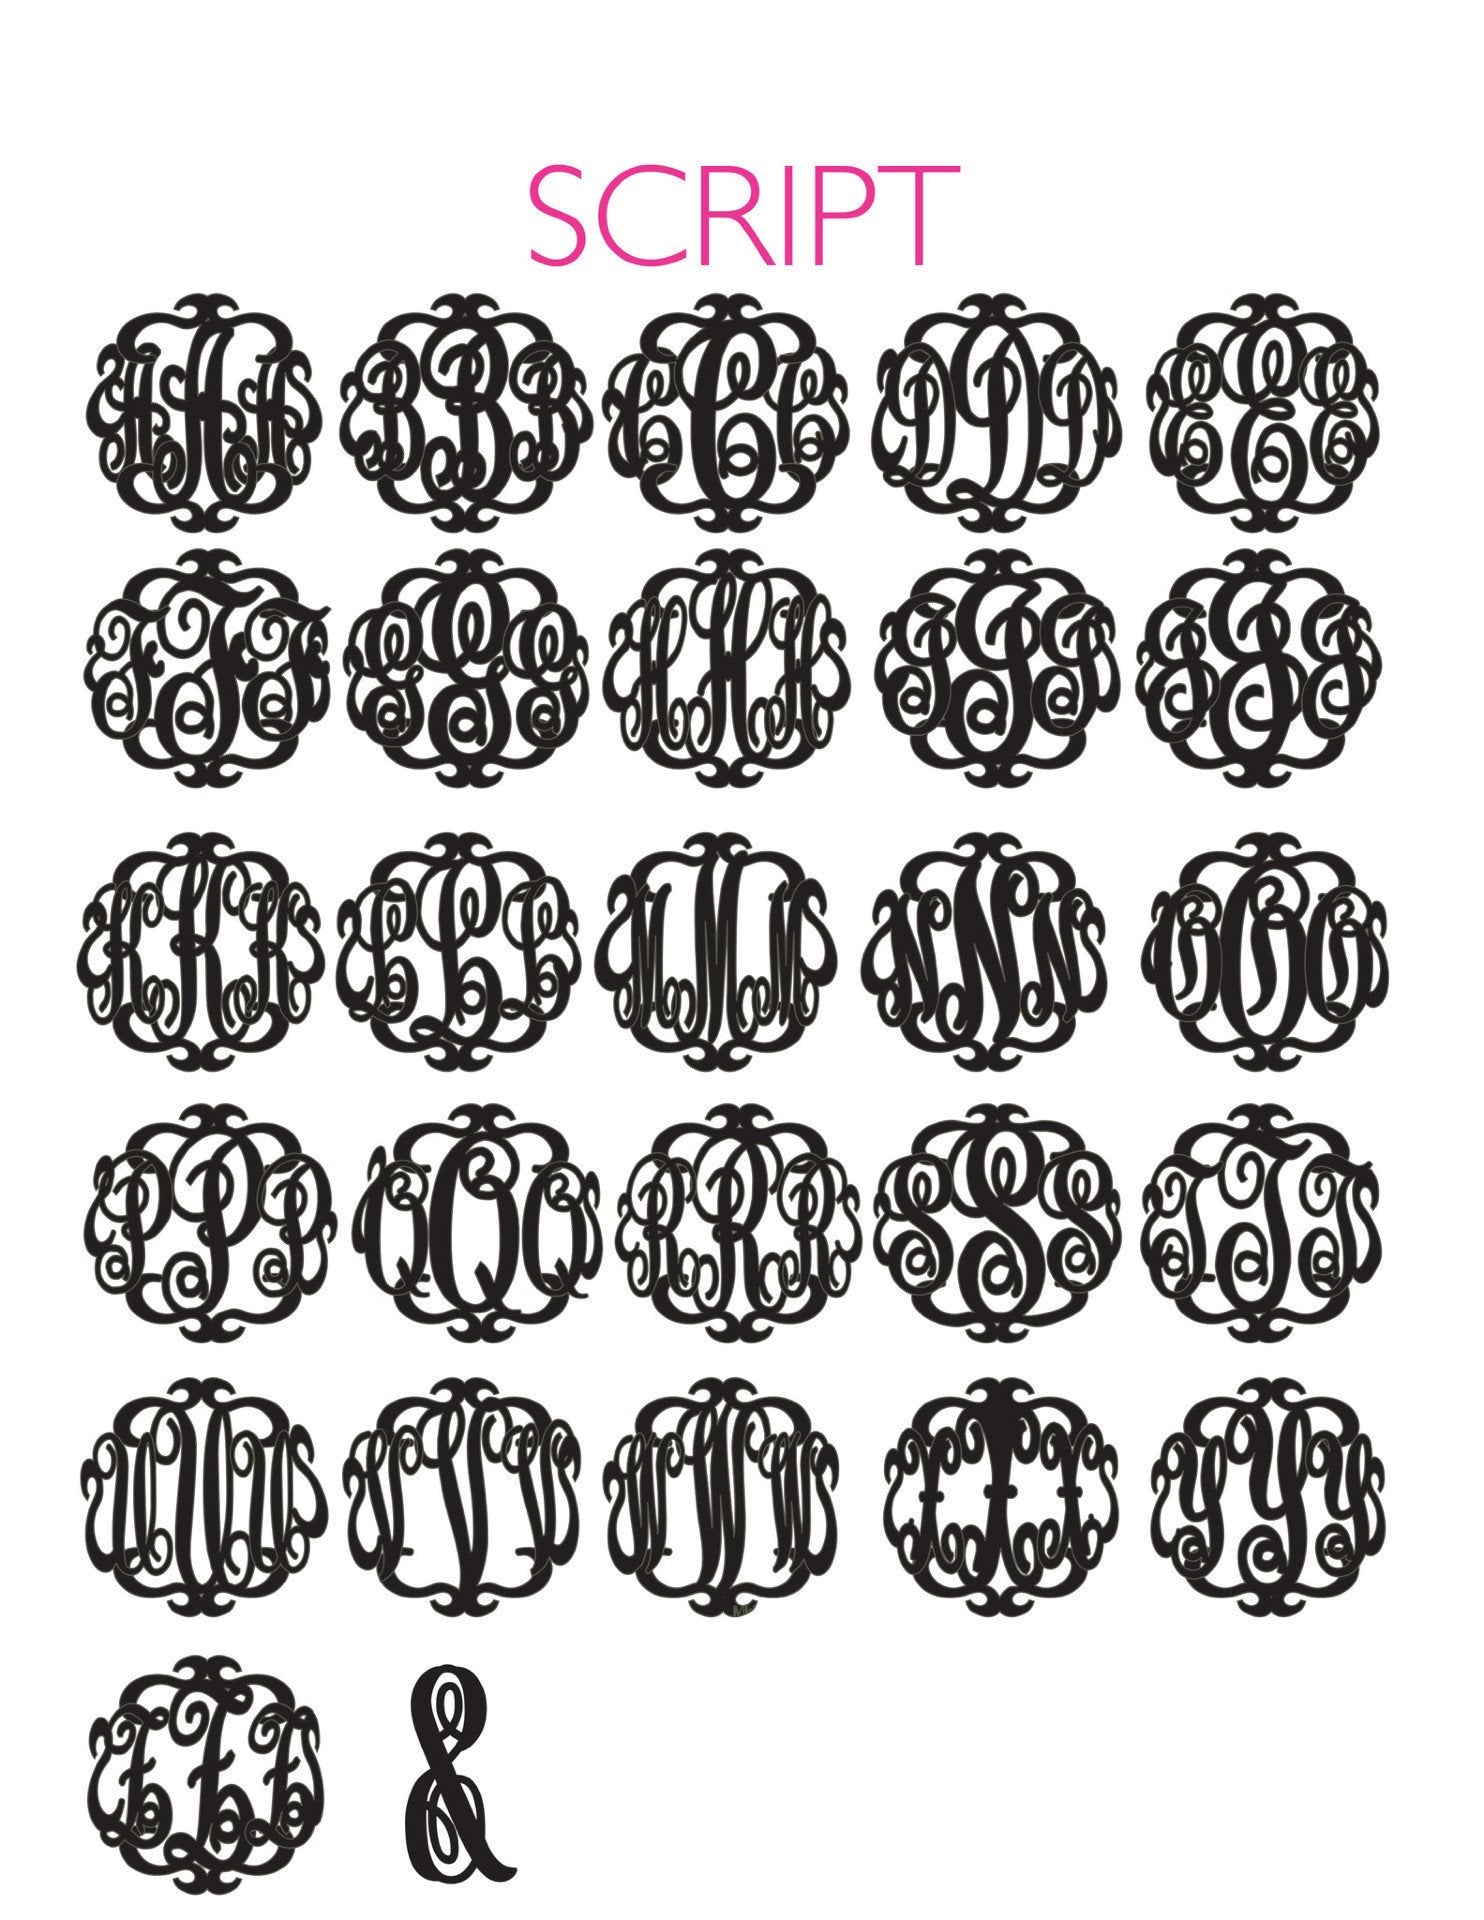 Sample "MEF" Paris Monogram Necklace